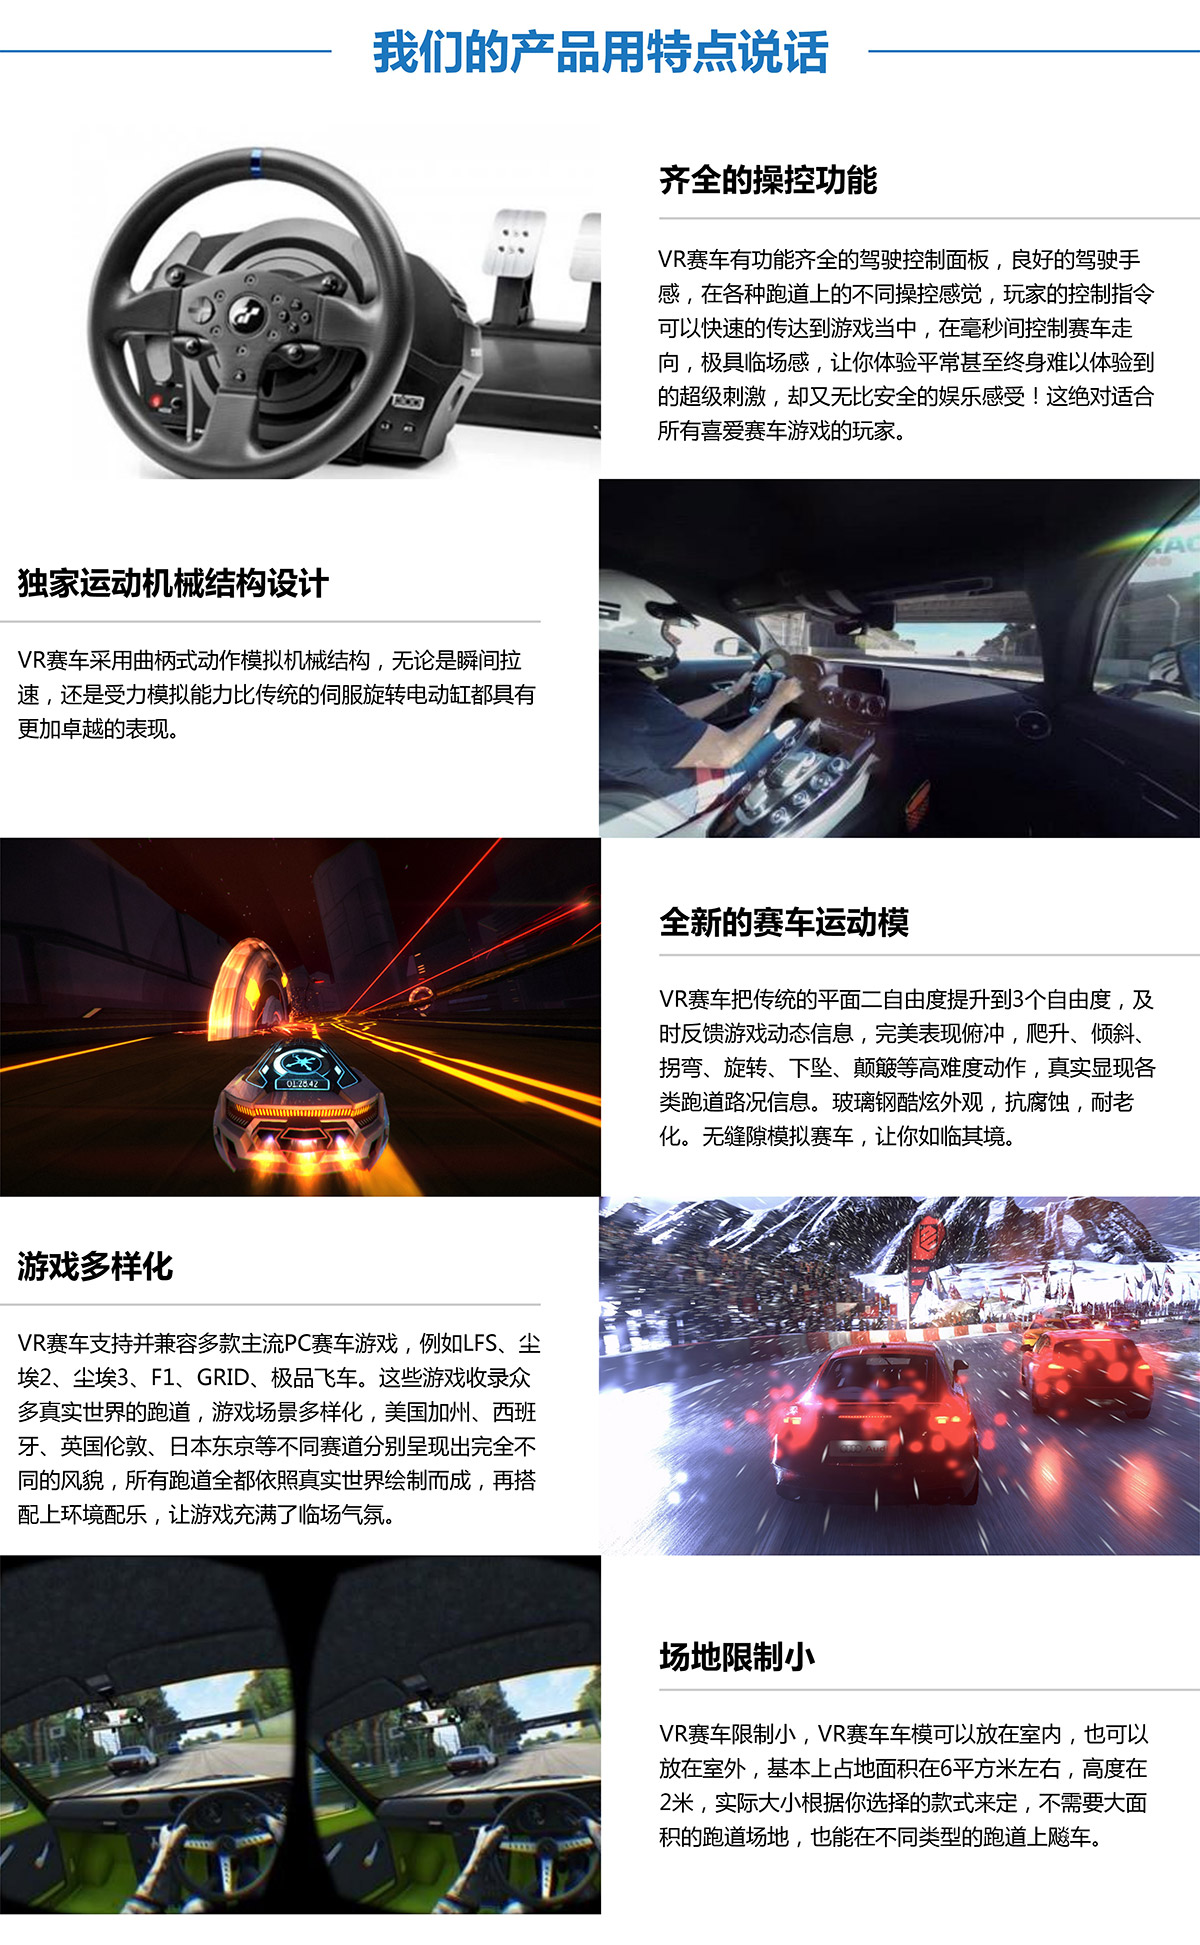 重庆虚拟VR赛车产品用特点说话.jpg